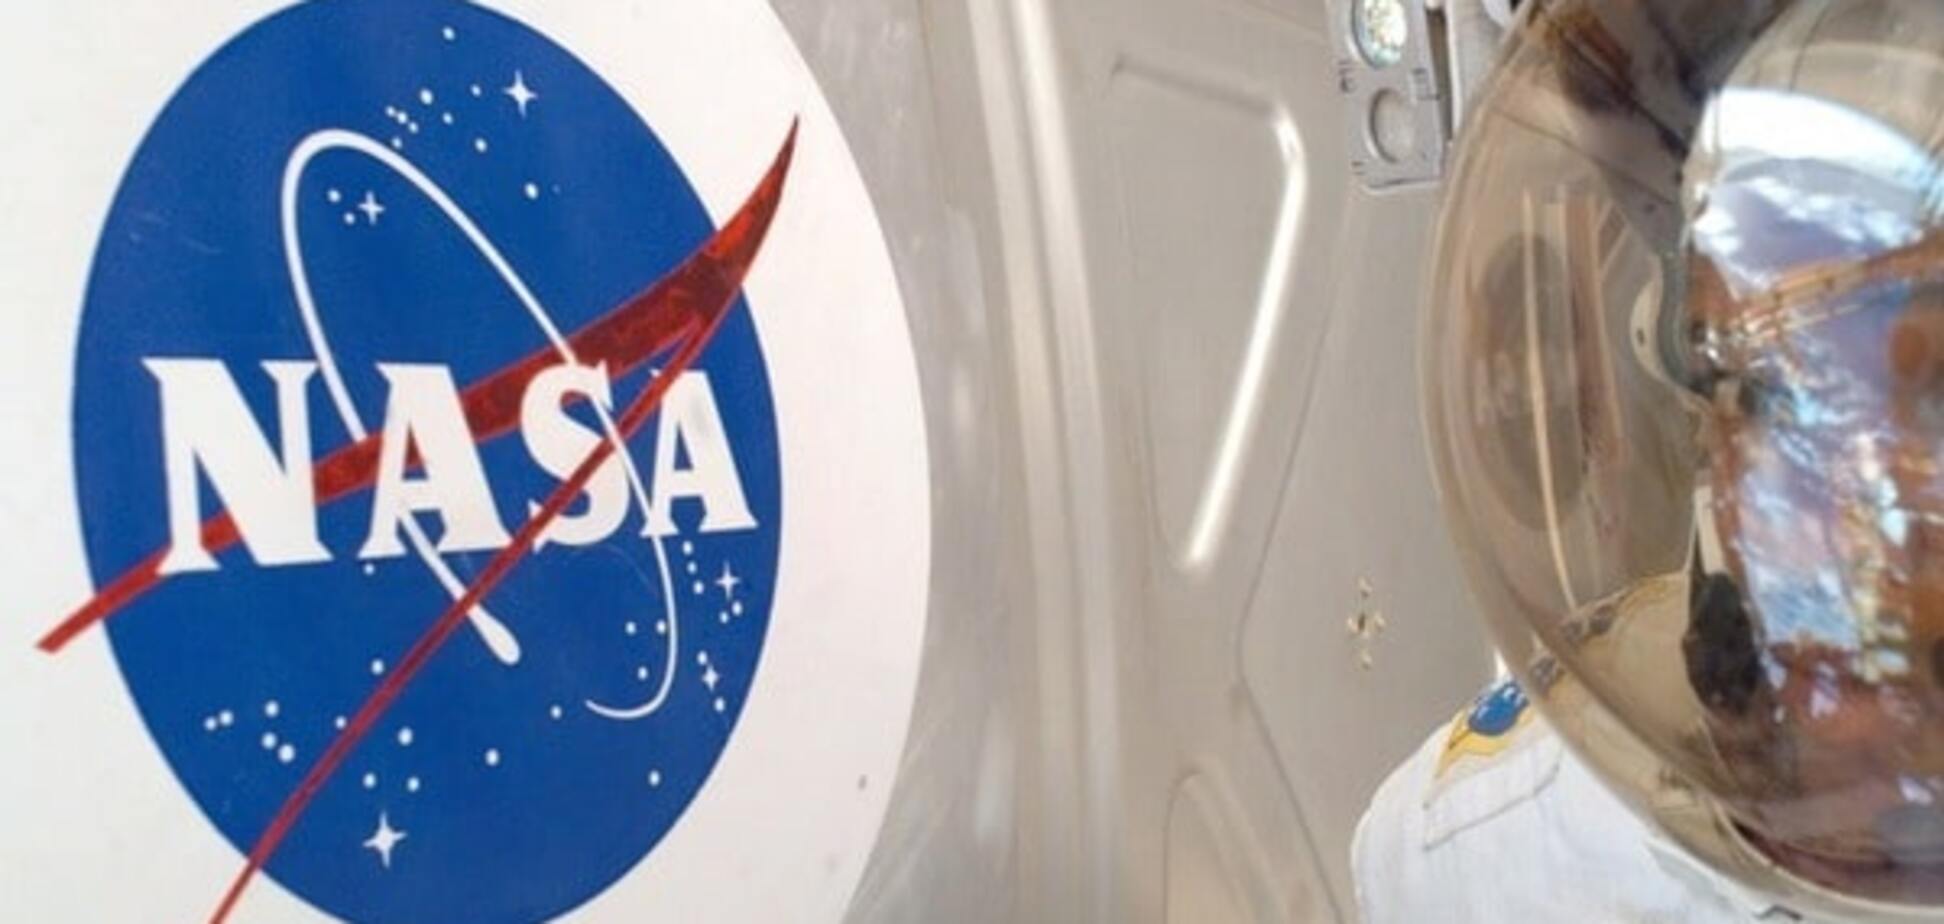 Космические сокровища: что прячет NASA в своем тайном хранилище